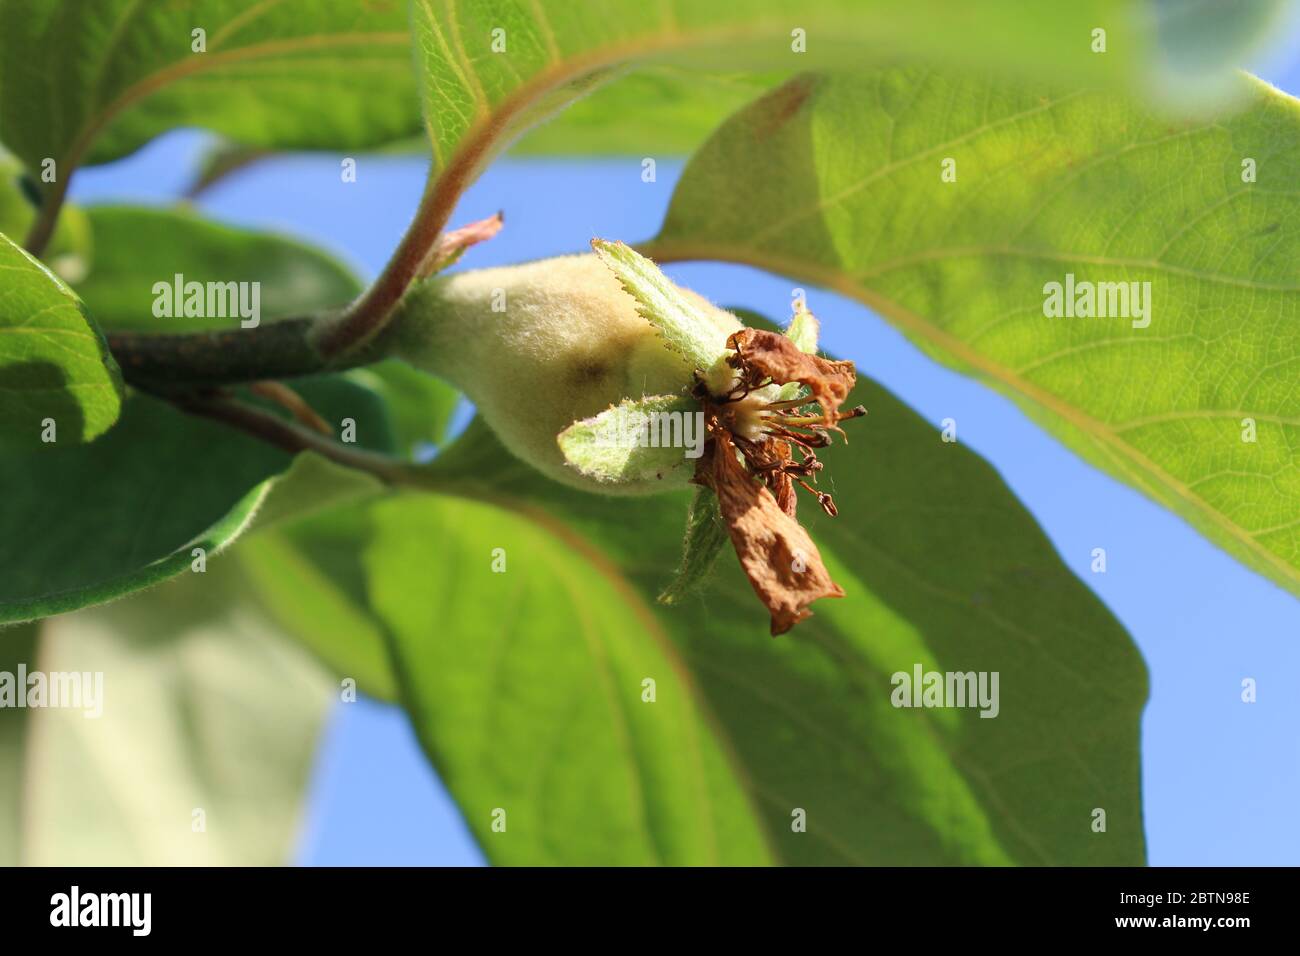 Nahaufnahme der jungen unreifen Frucht der Cydonia oblonga auch bekannt als Quitte. Wachsen im Freien in einer natürlichen Umgebung. Stockfoto